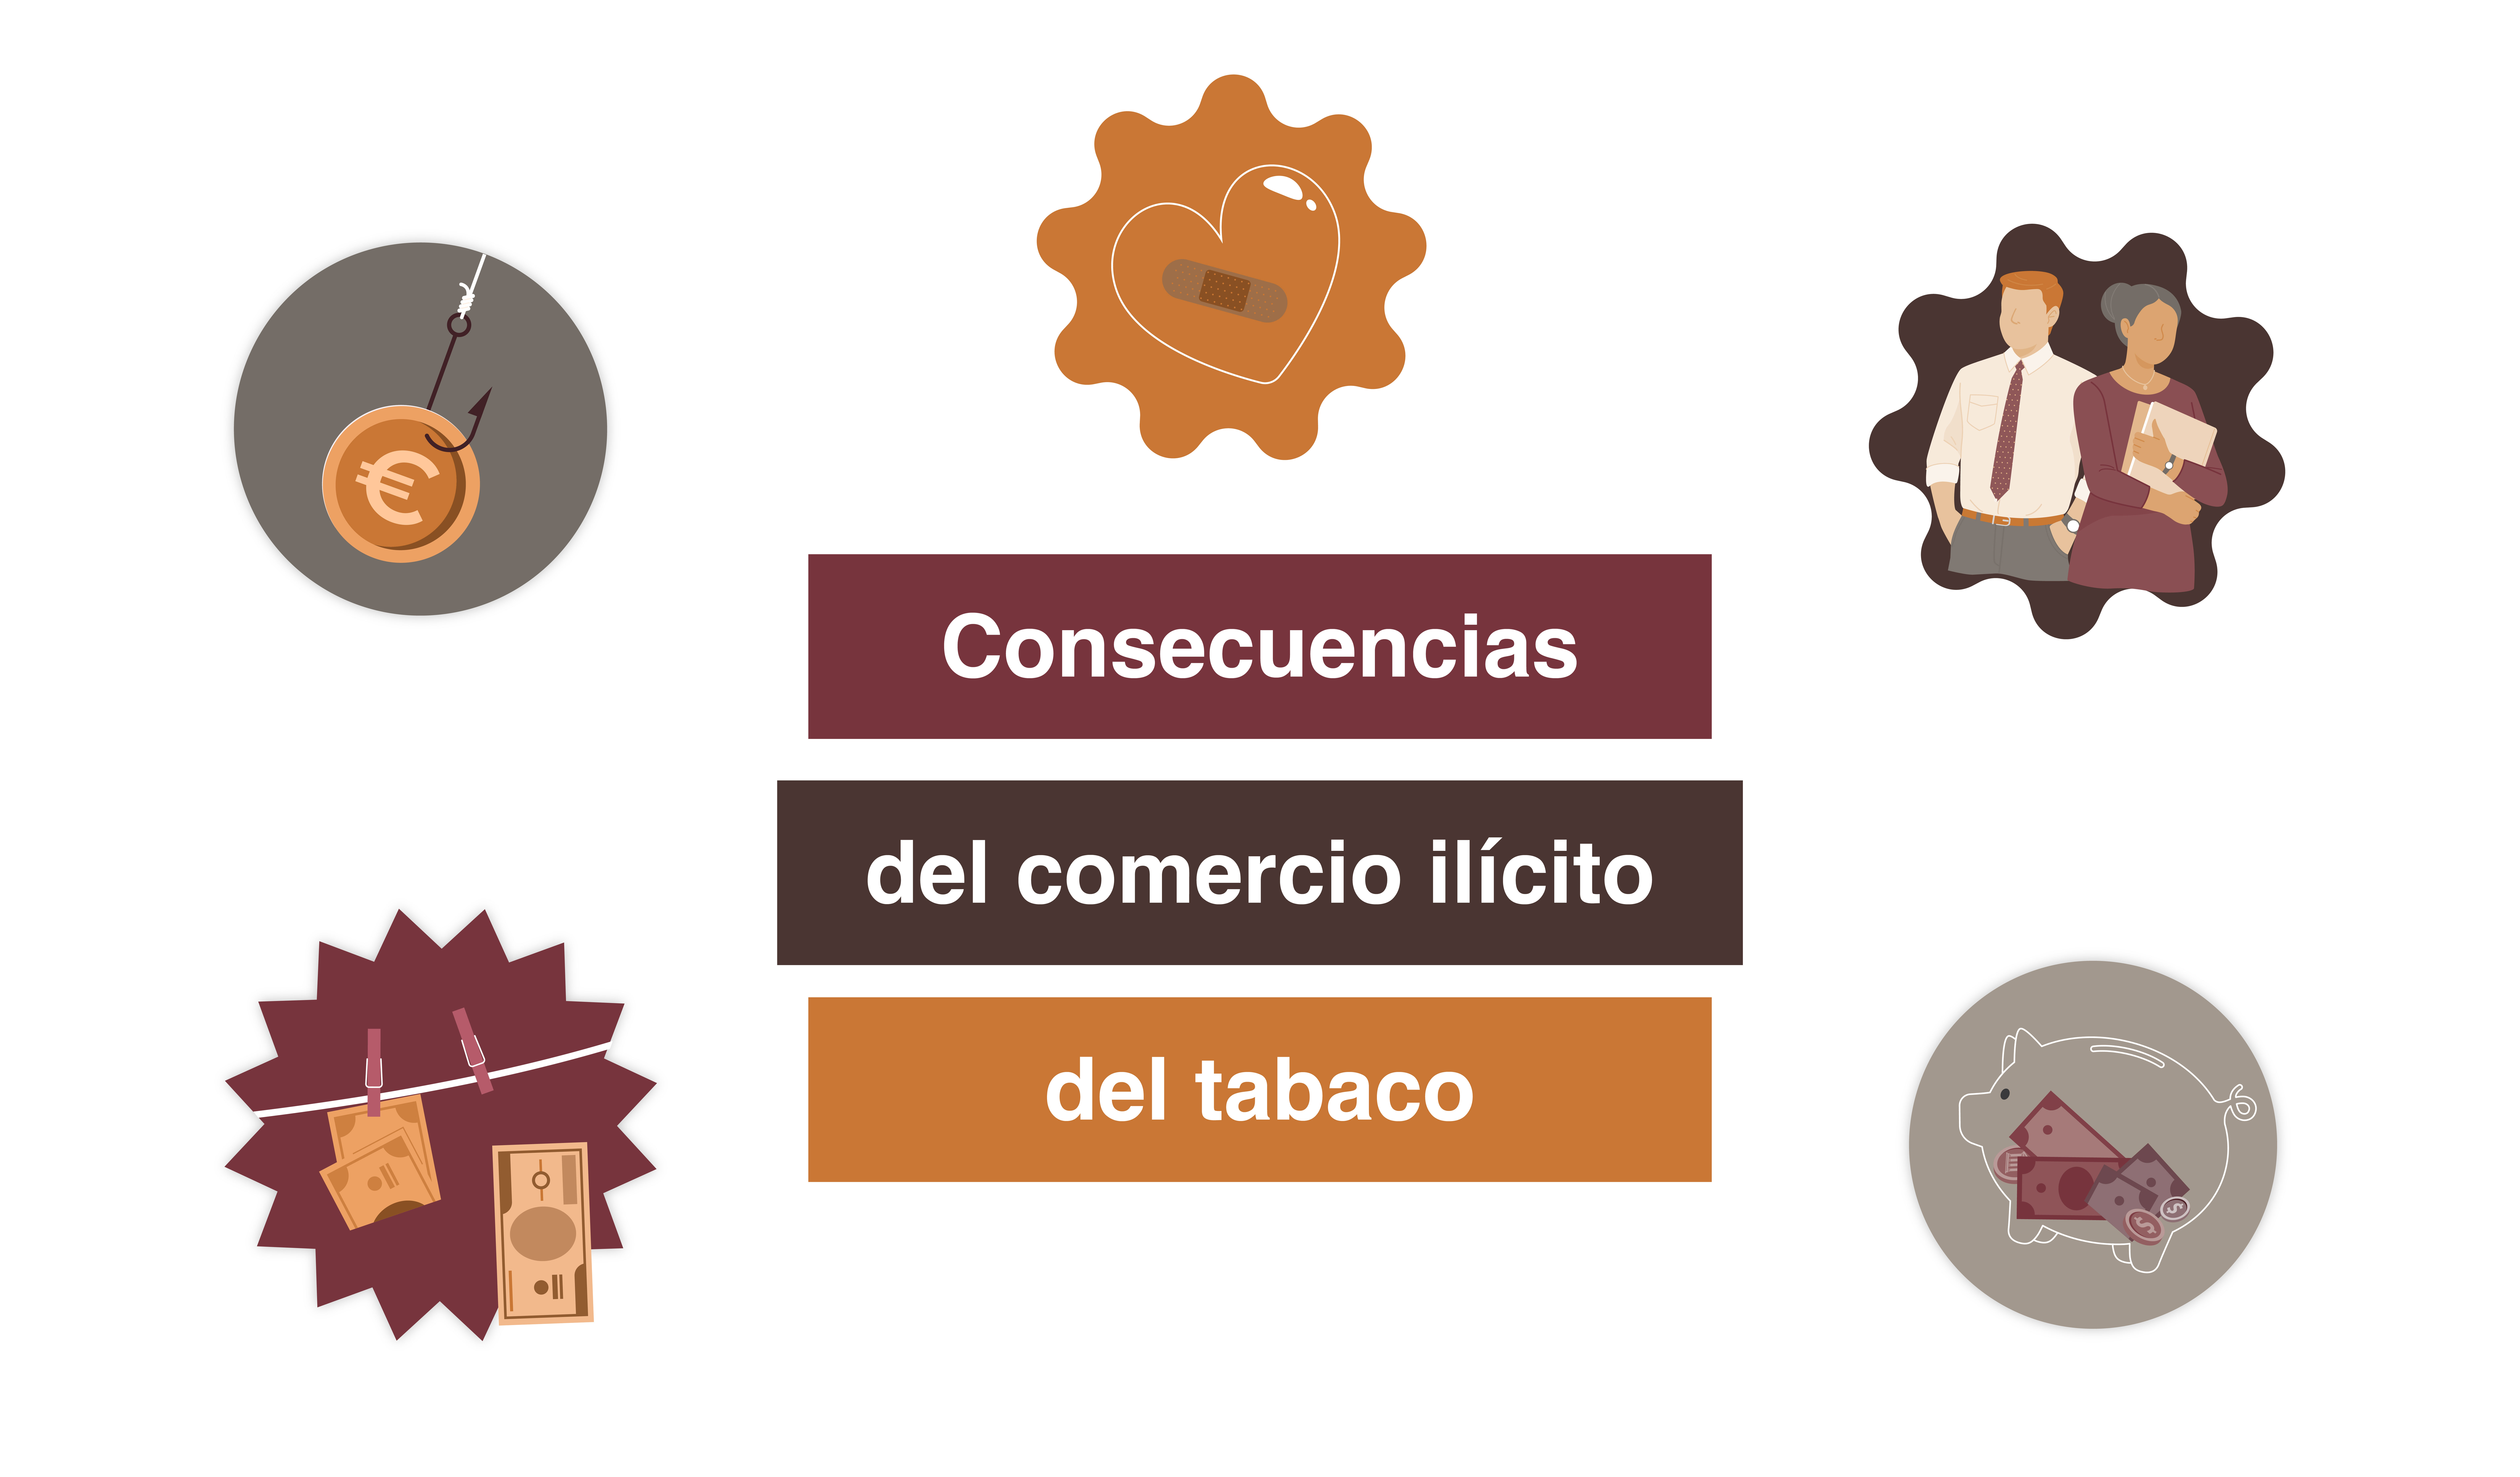 Conoce las consecuencias del comercio ilícito del tabaco: Destrucción de empleo y pérdidas económicas